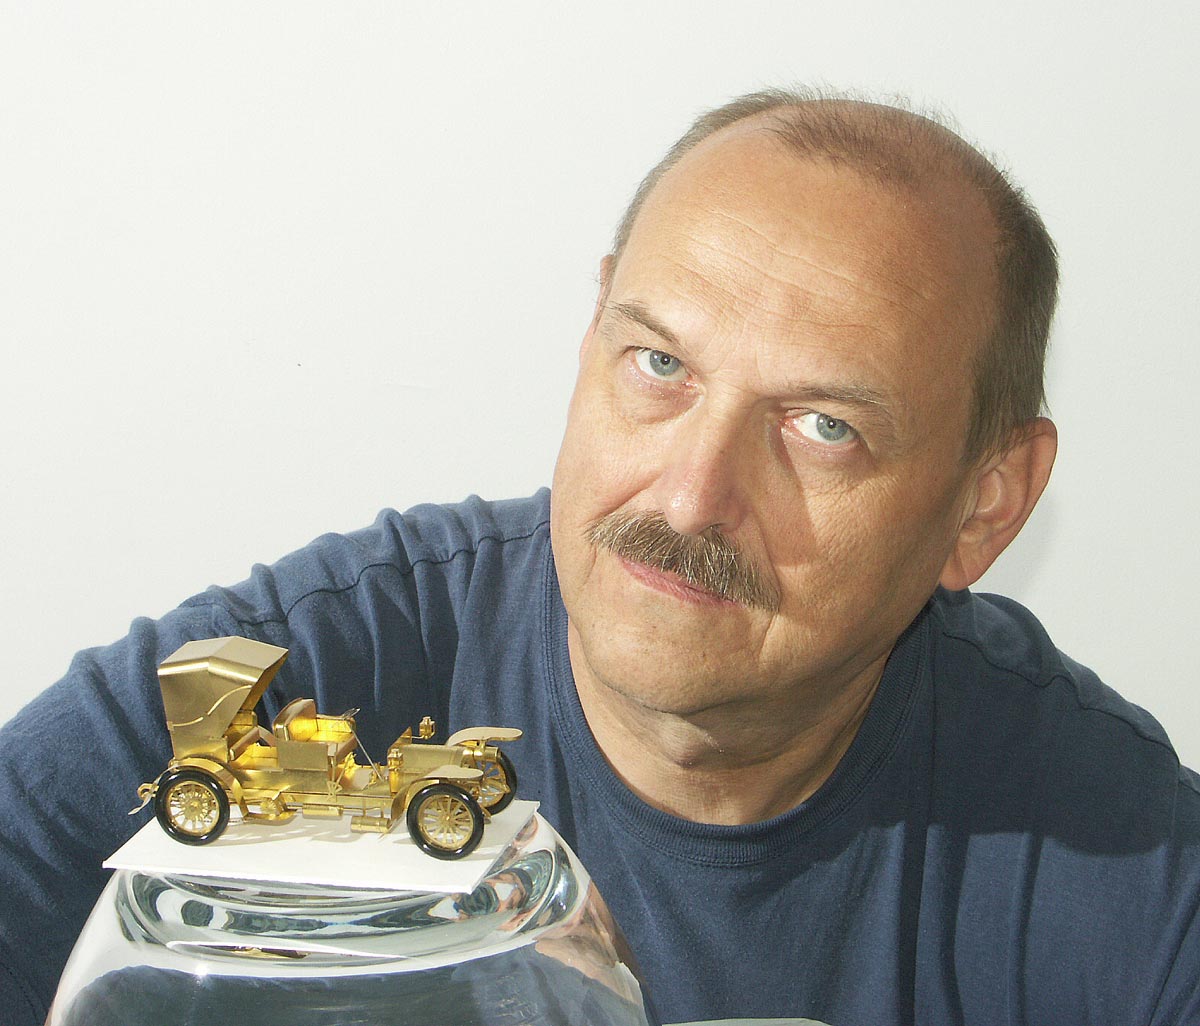 Szymon Klimek with one of his miniature brass models. 